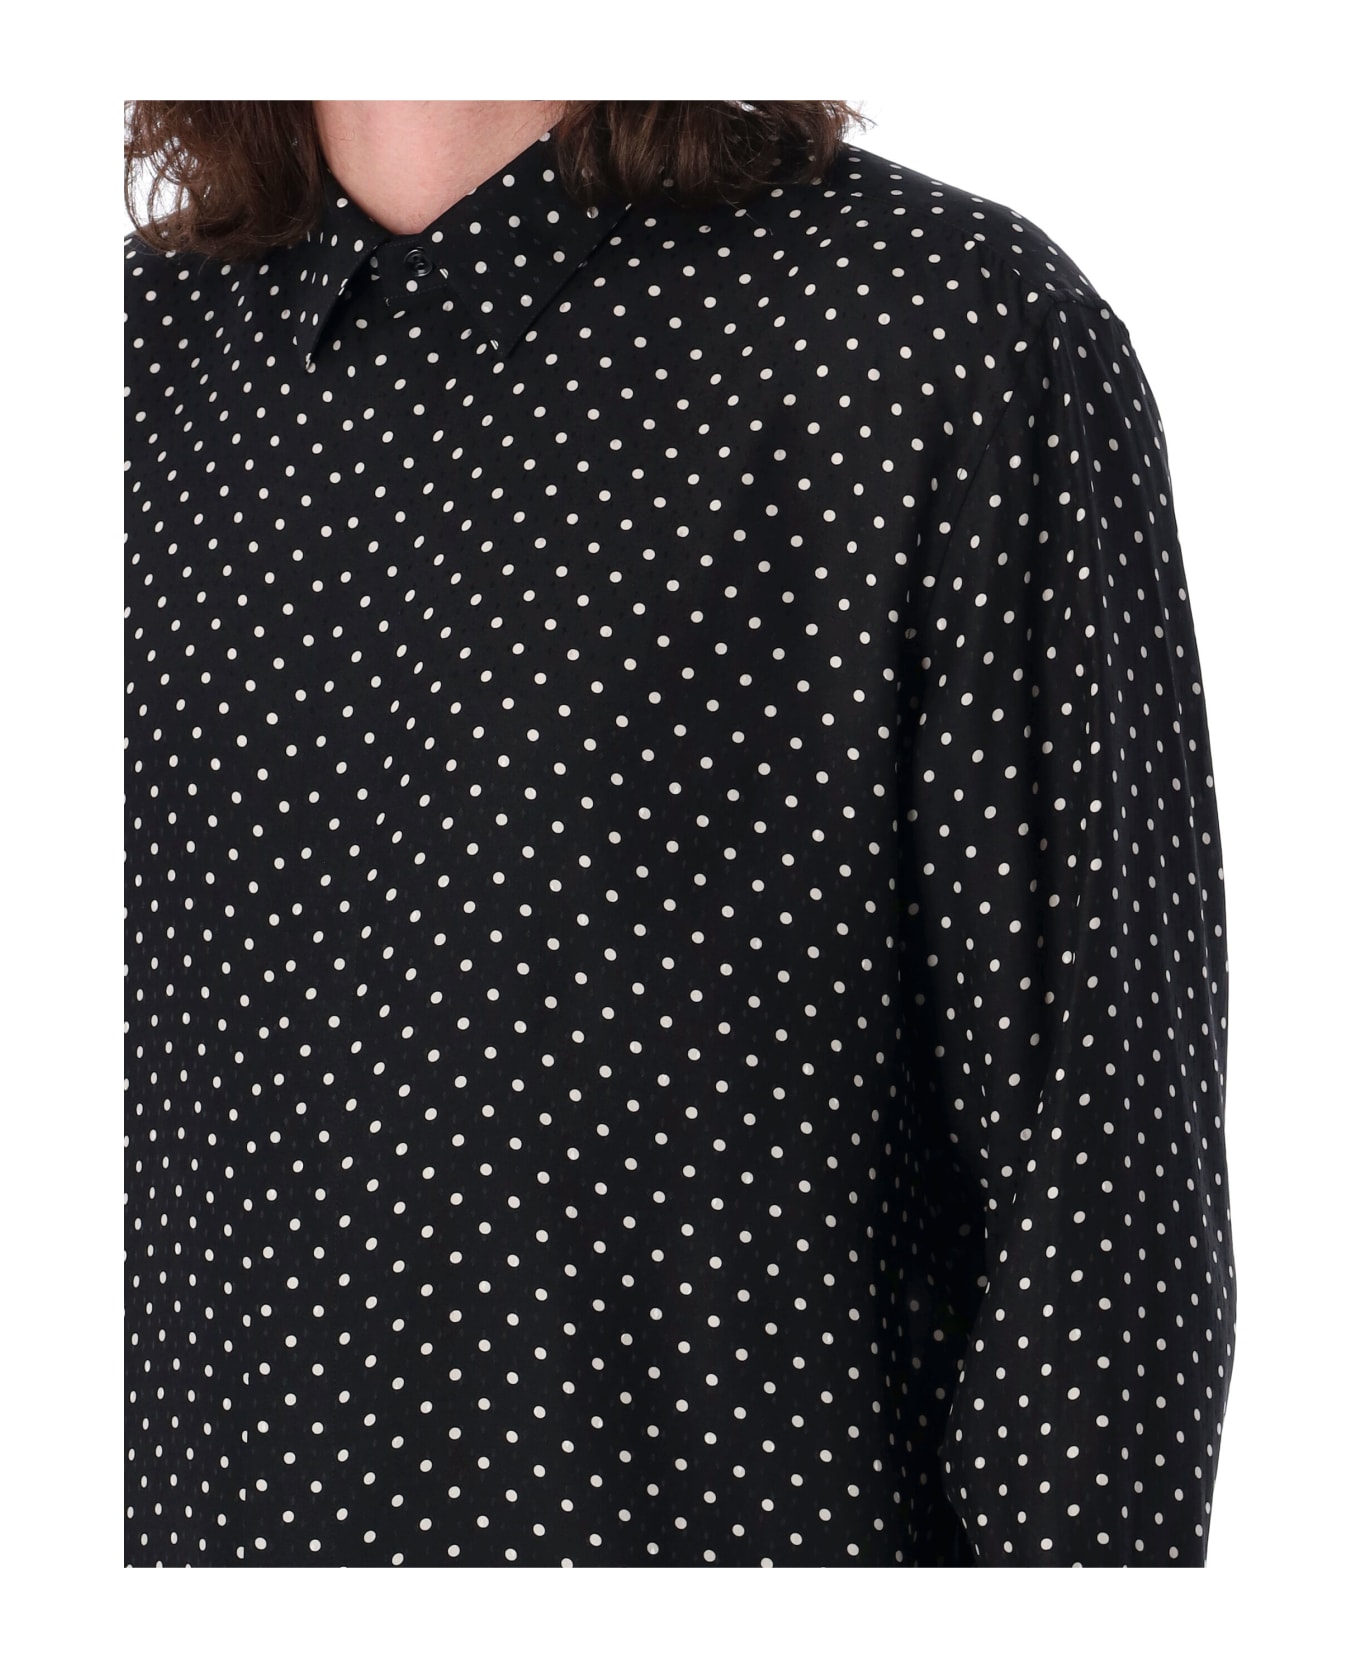 Saint Laurent Dotted Shirt - BLACK CRAIE